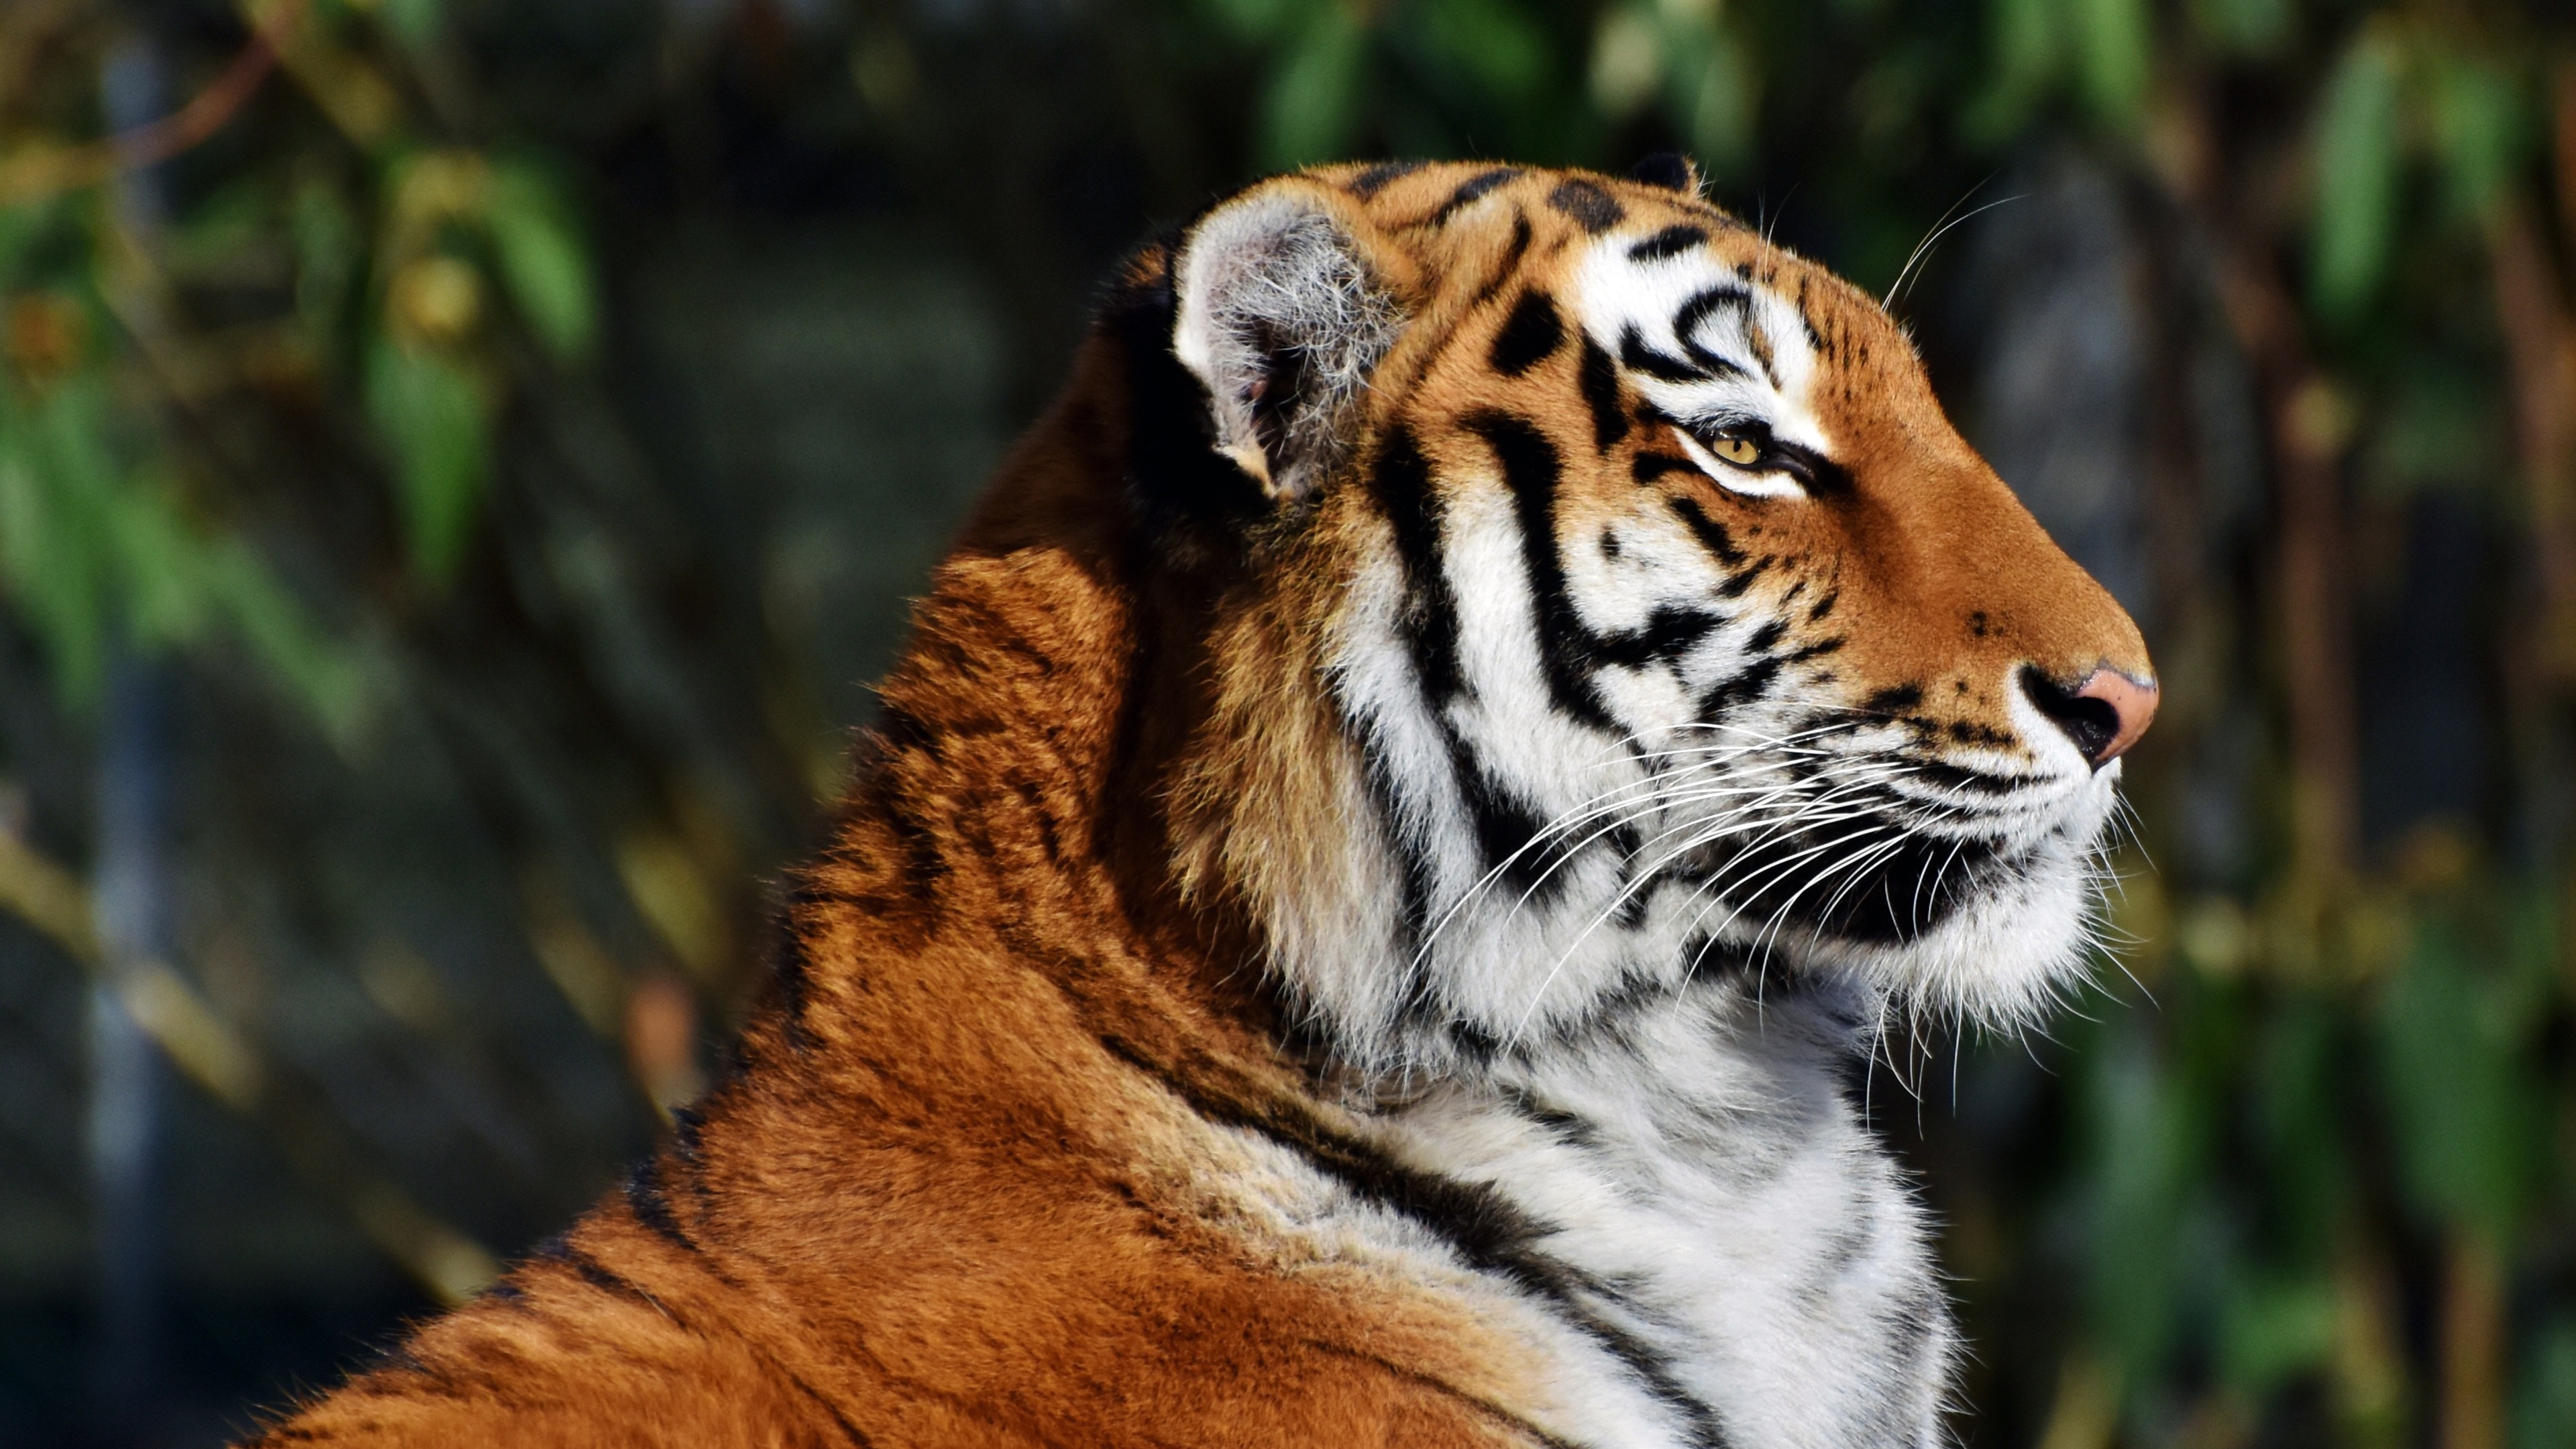 Bangladesh Tiger Close-up Photography 4k Hd Wallpaper - Tiger Face Side View - HD Wallpaper 